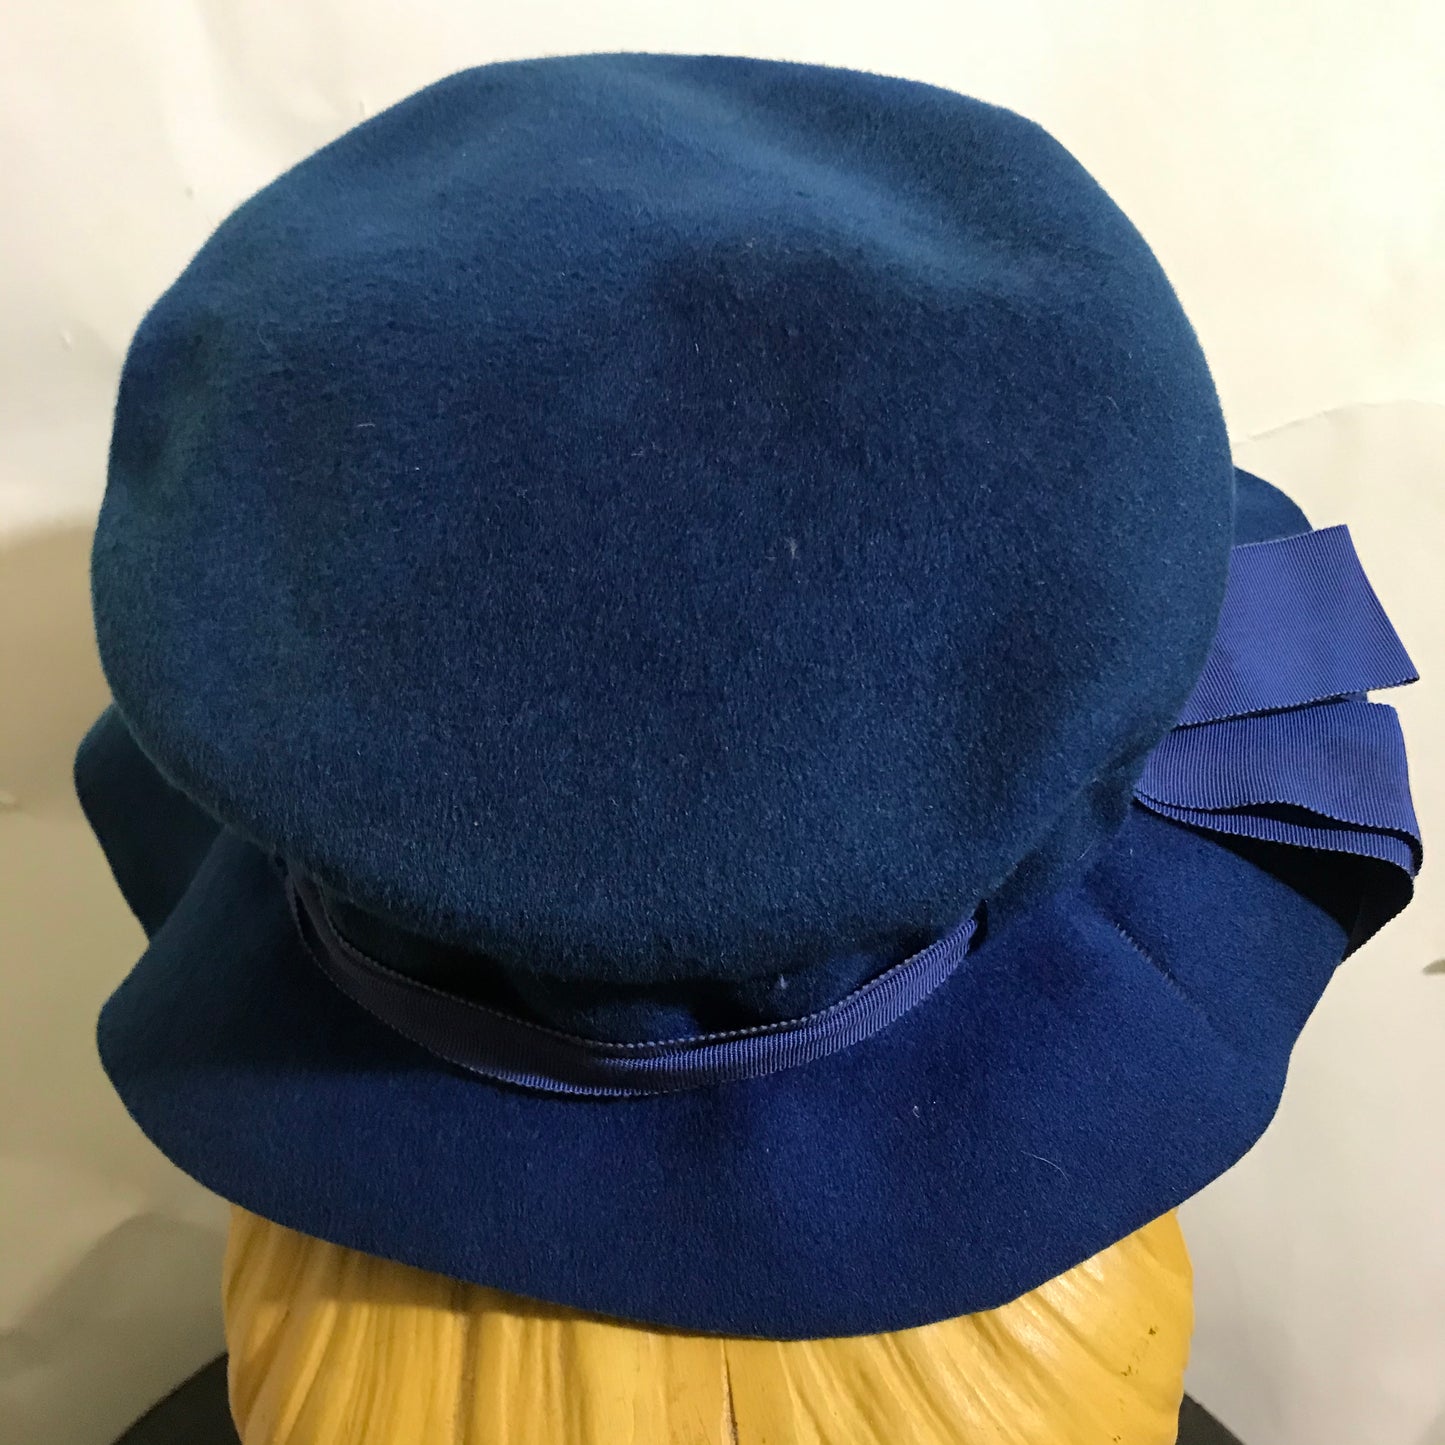 Bright Blue Felted Hat Ruffled Brim circa 1940s